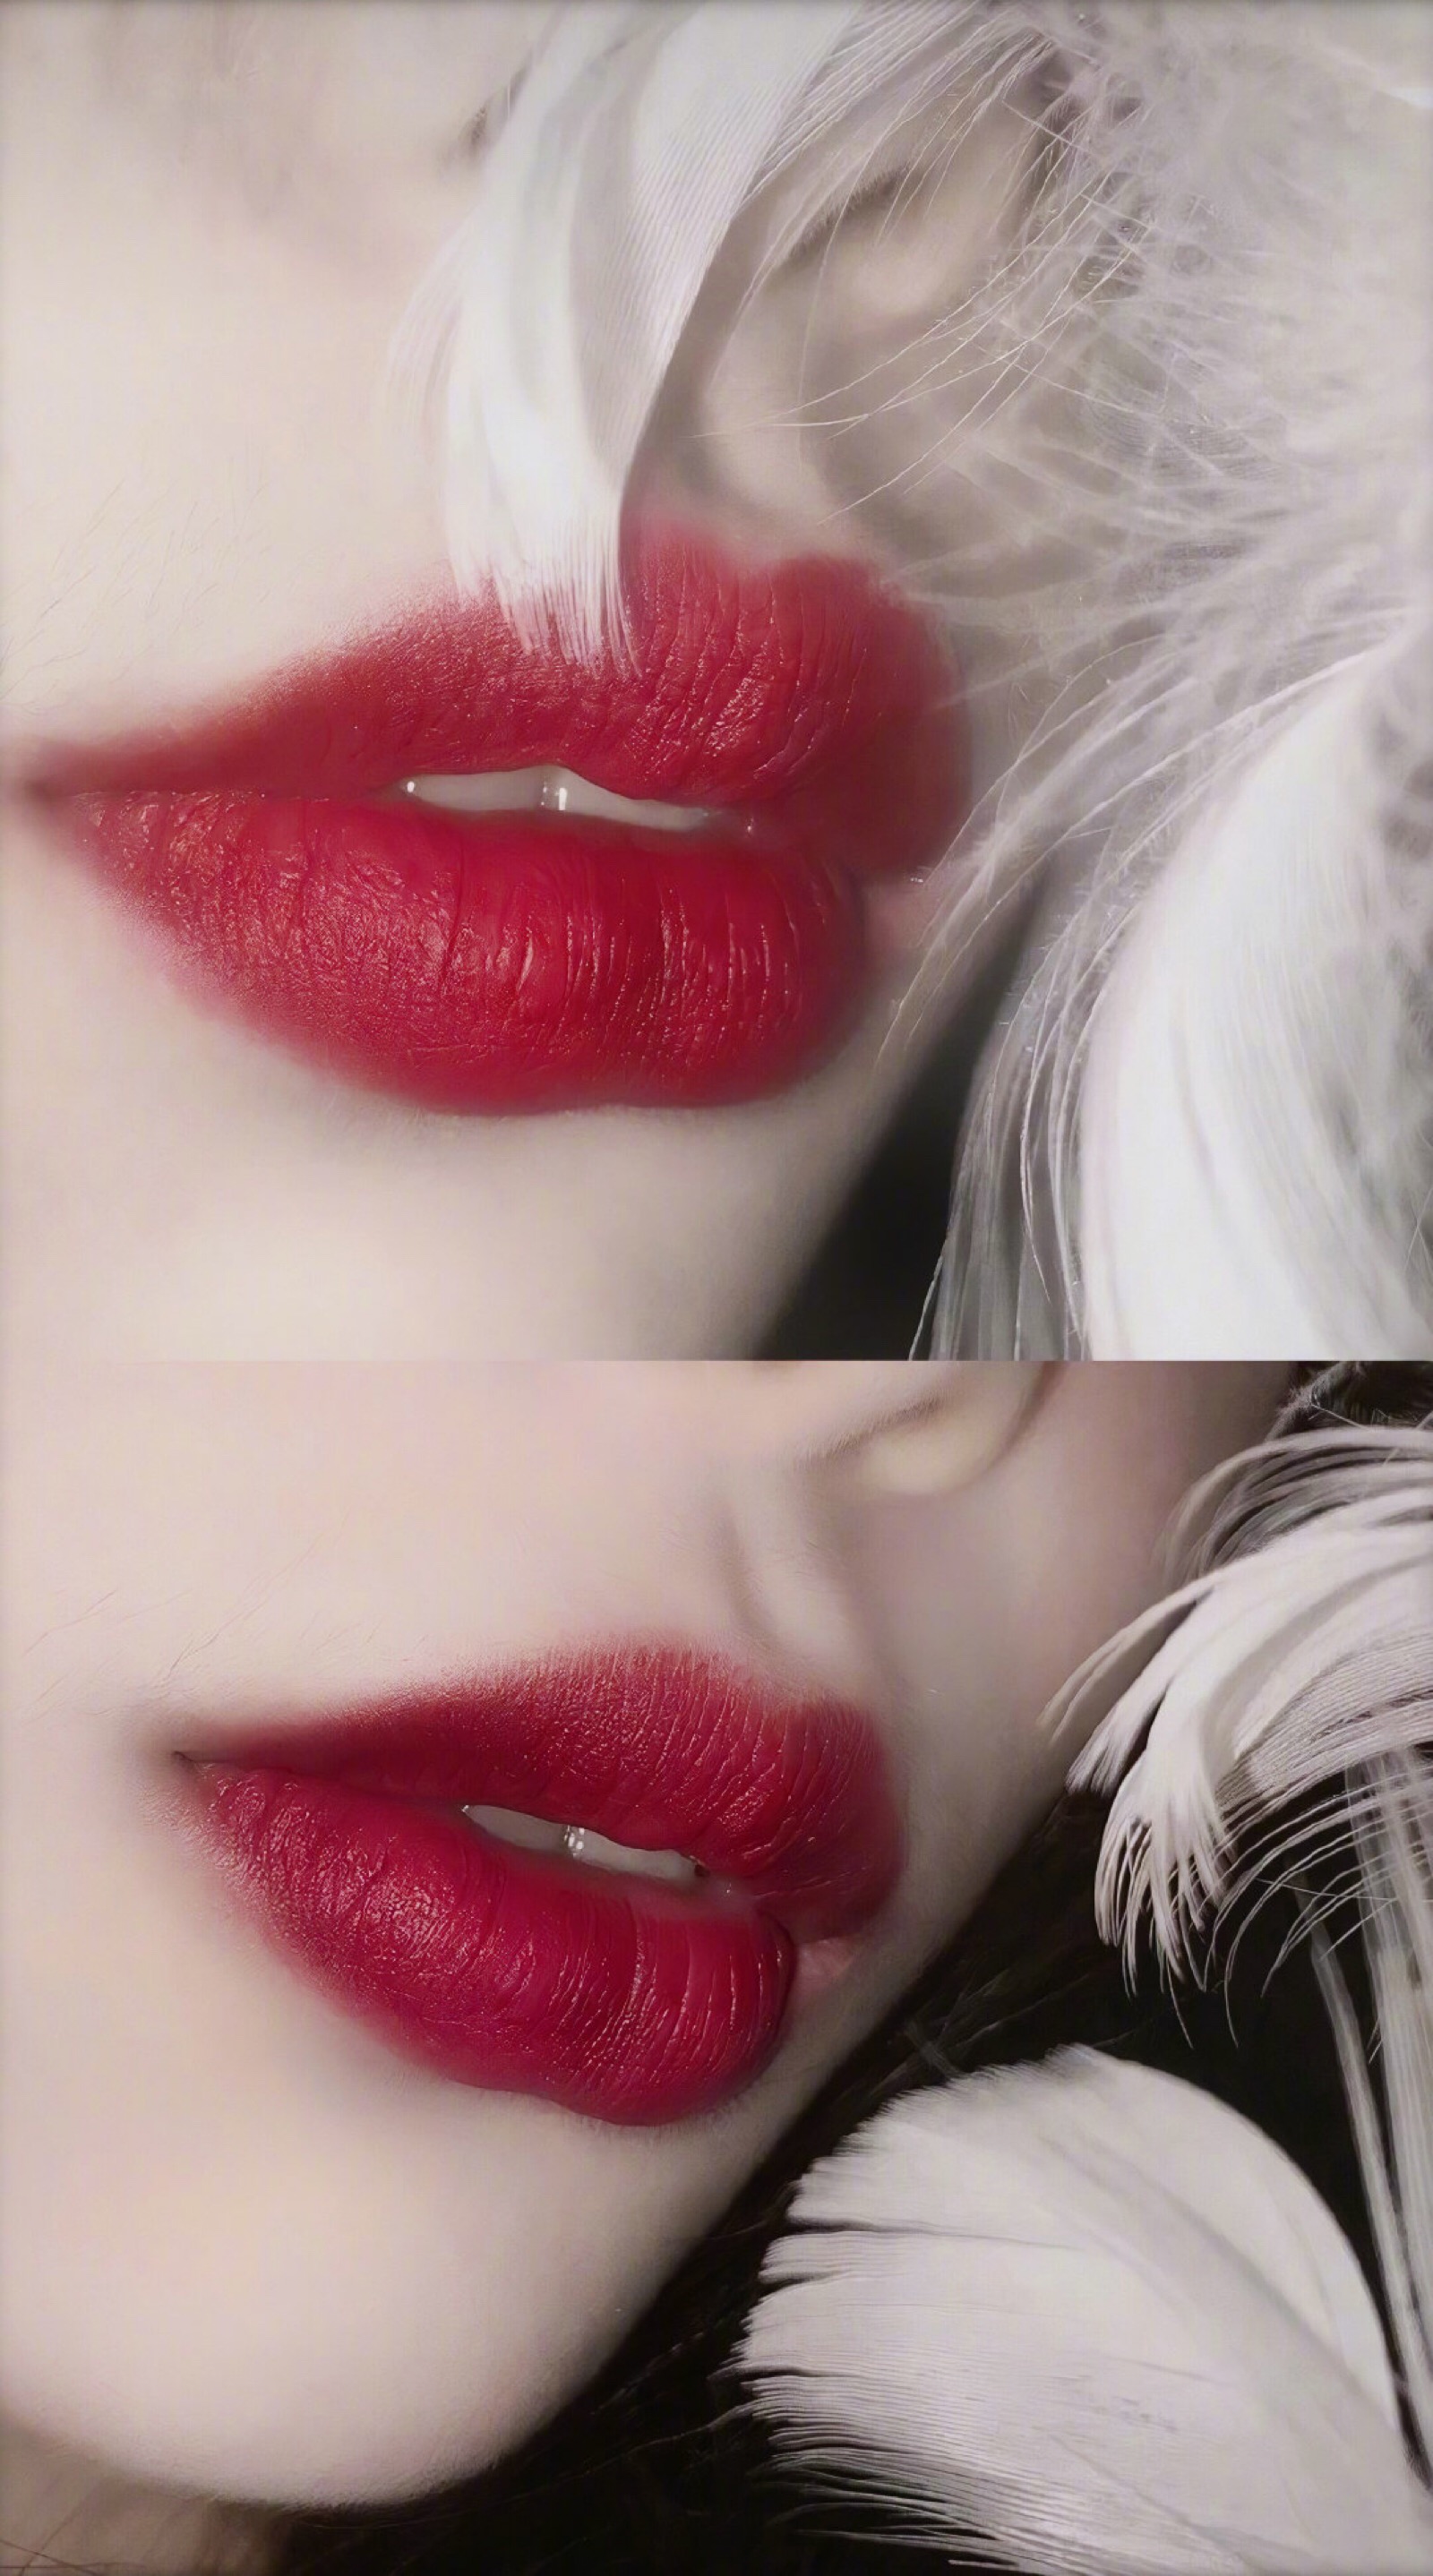 美女嘴唇素材-美女嘴唇图片-美女嘴唇素材图片下载-觅知网